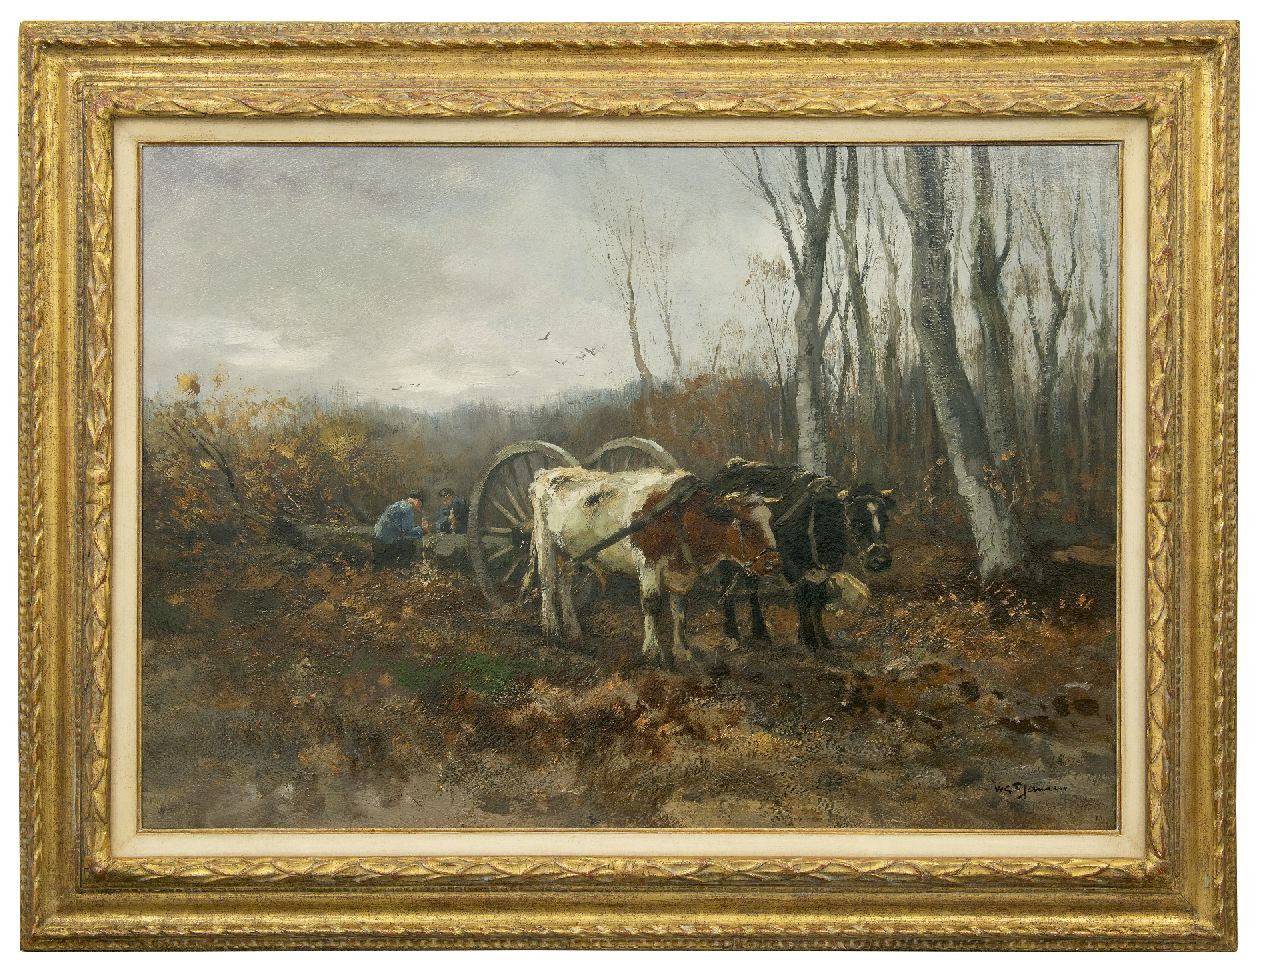 Jansen W.G.F.  | 'Willem' George Frederik Jansen, Lumbermen at work, oil on canvas 71.2 x 101.2 cm, signed l.r.